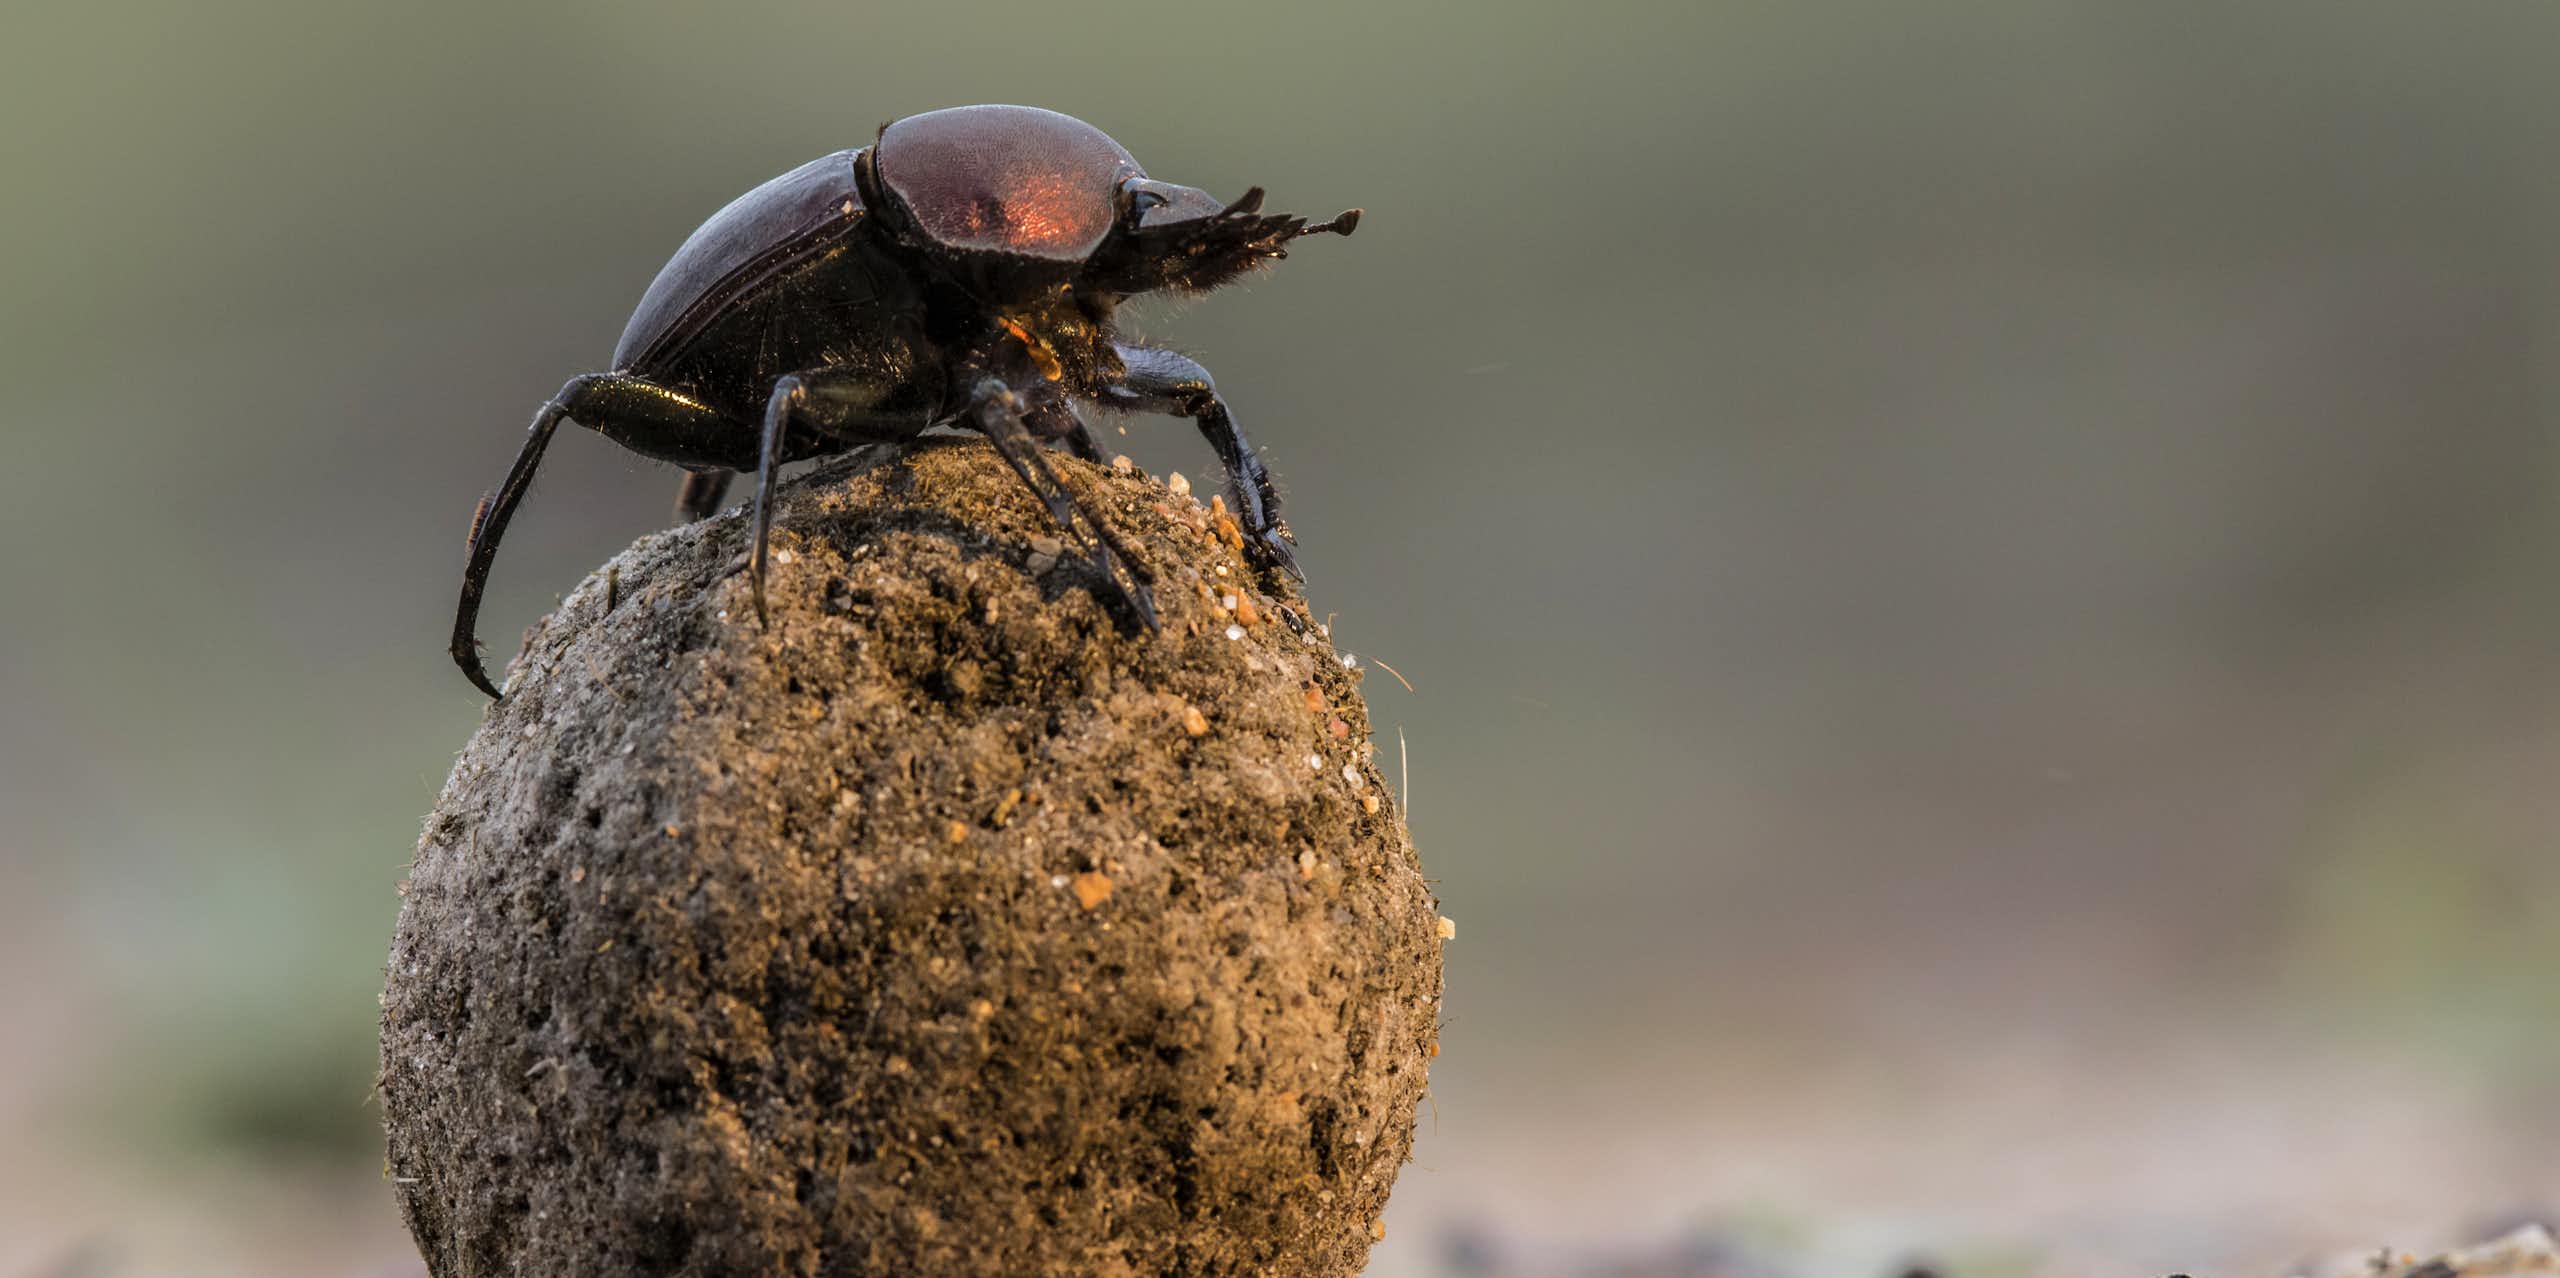 Dung beetle atop dung ball